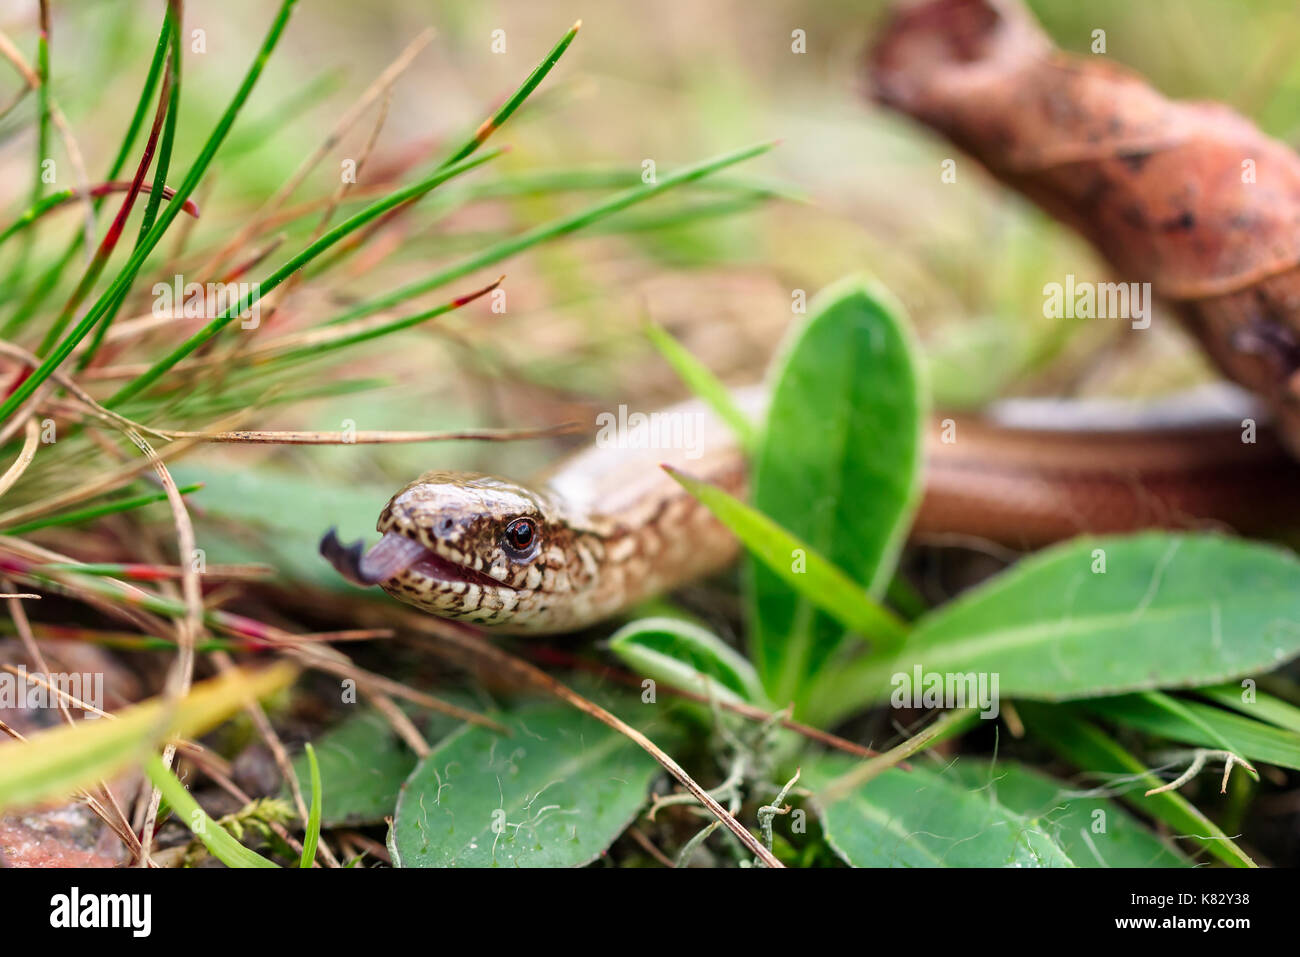 Auch die Nahaufnahme des slowworm, wie blindworm bekannt (Anguis fragilis), um eine beinlose Echse auf Waldboden. Konzentrieren Sie sich auf die Augen. Stockfoto